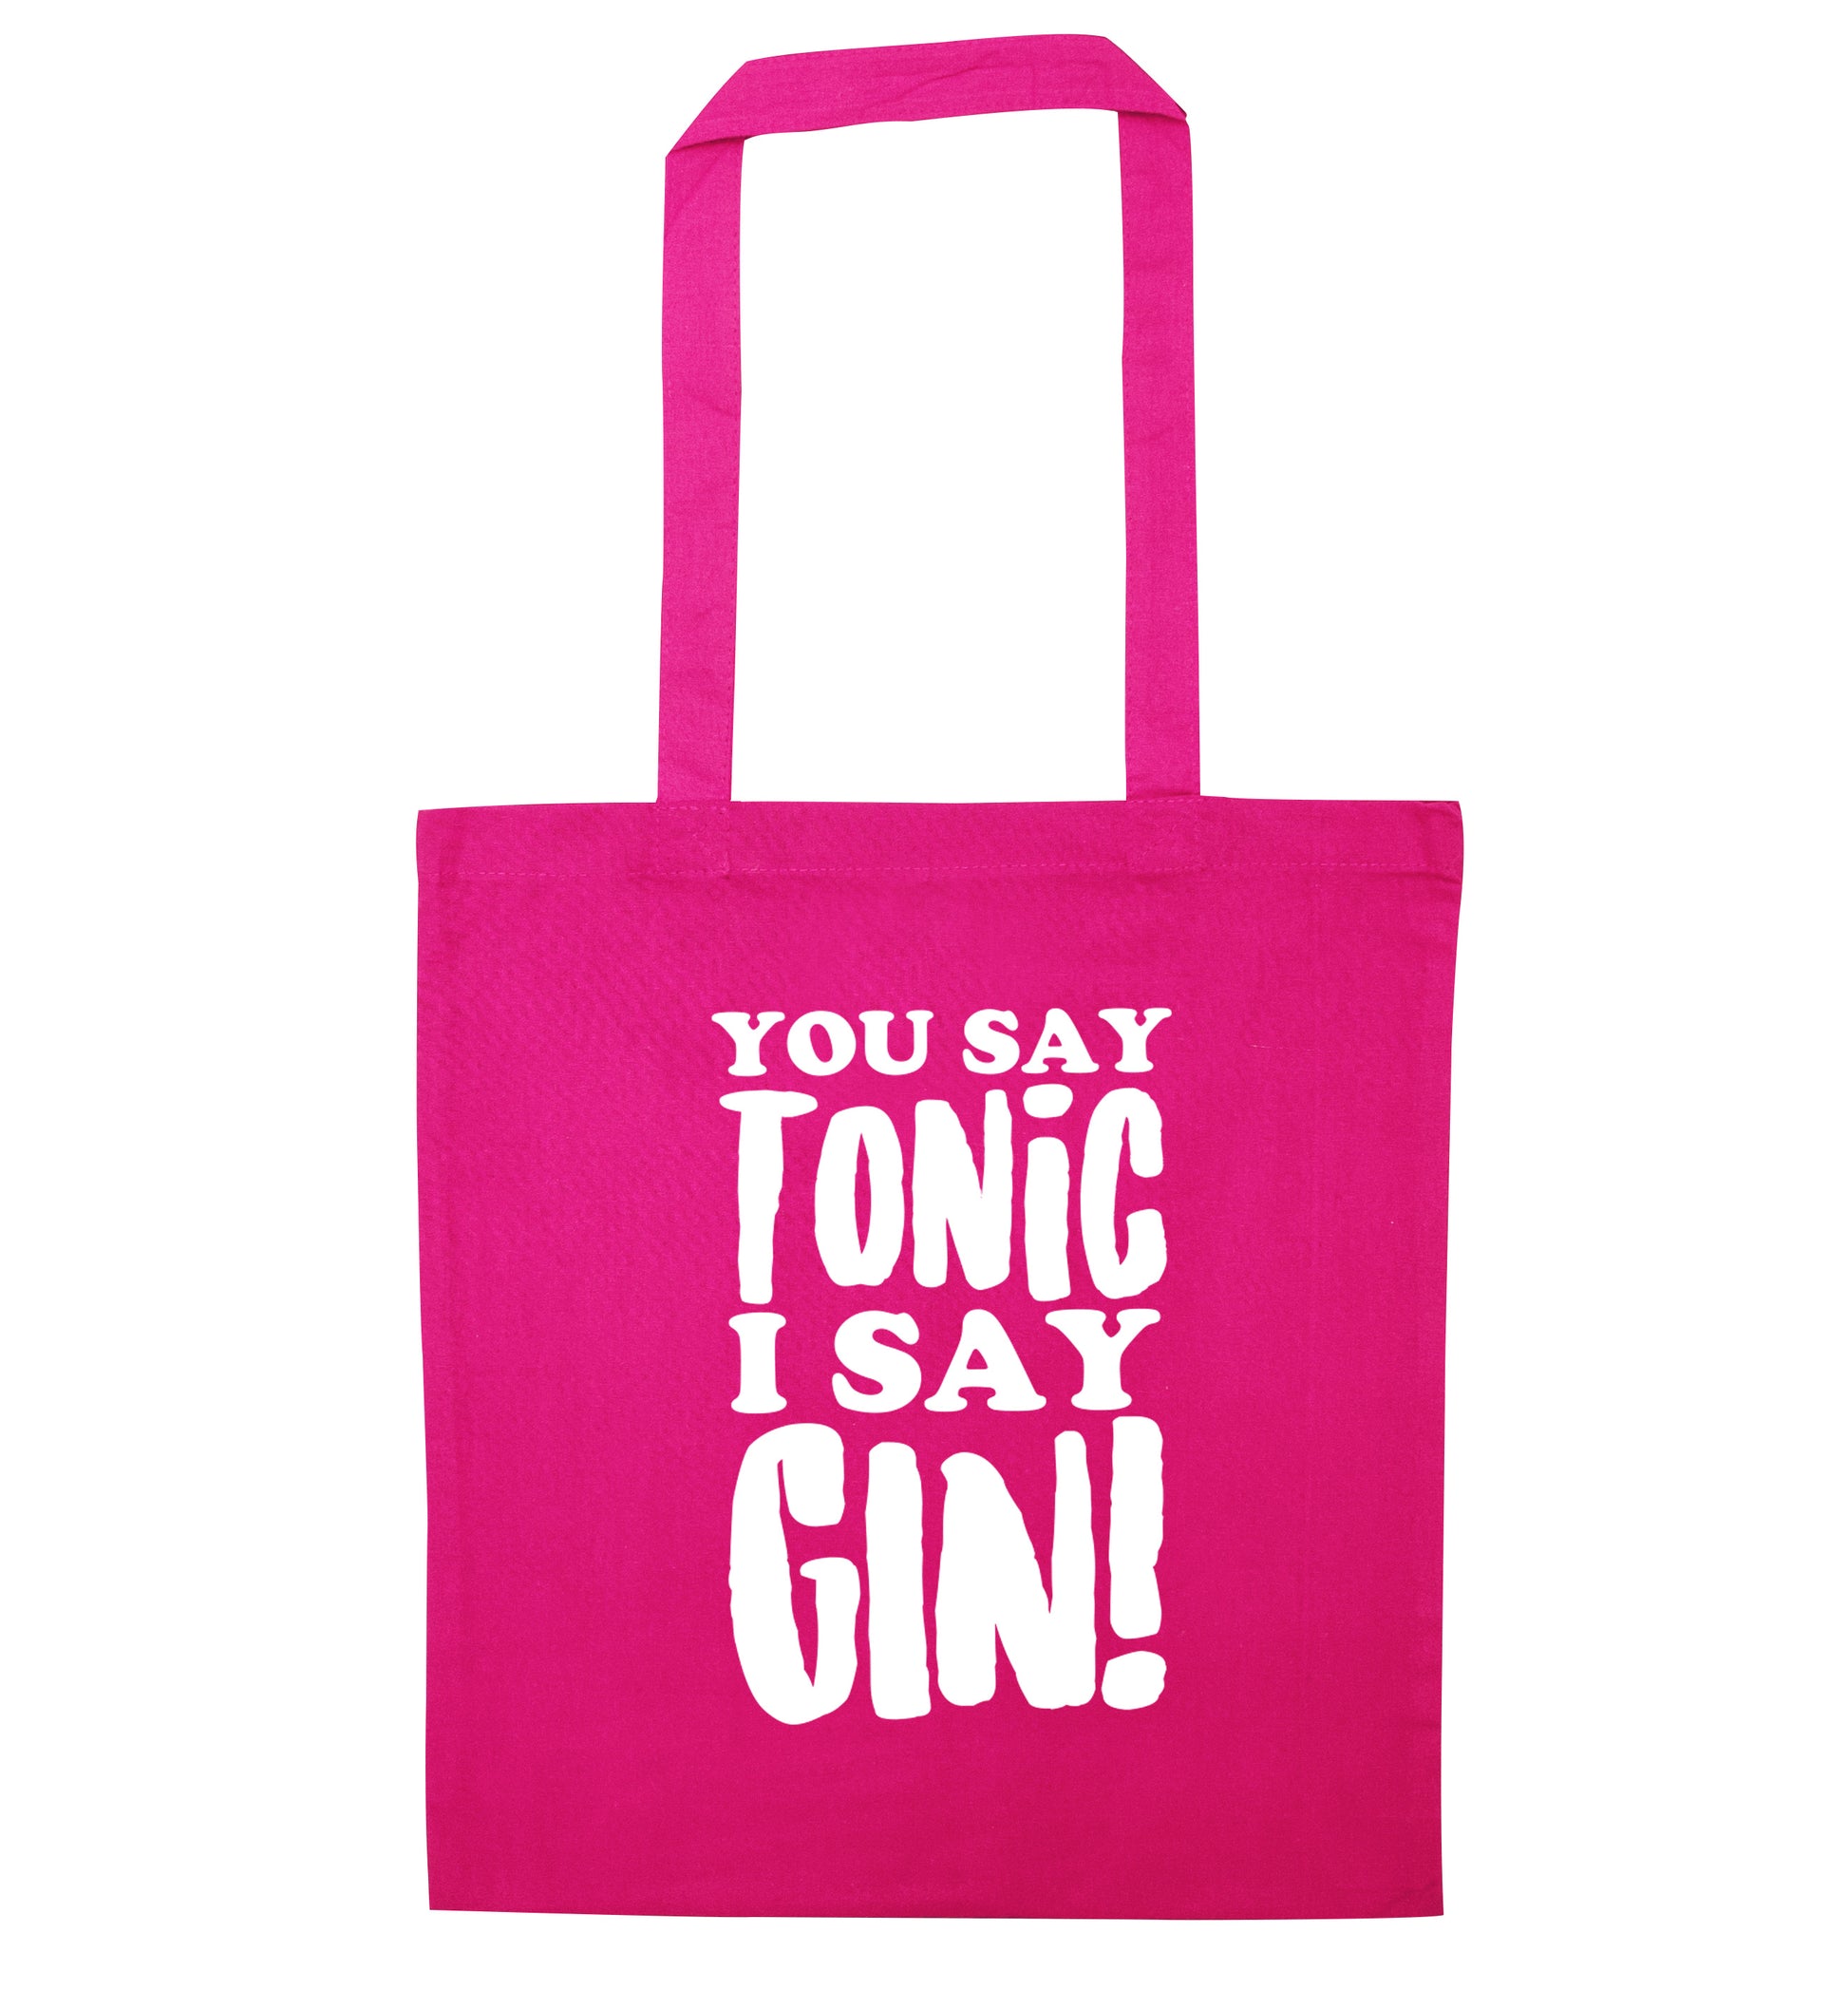 You say tonic I say gin! pink tote bag